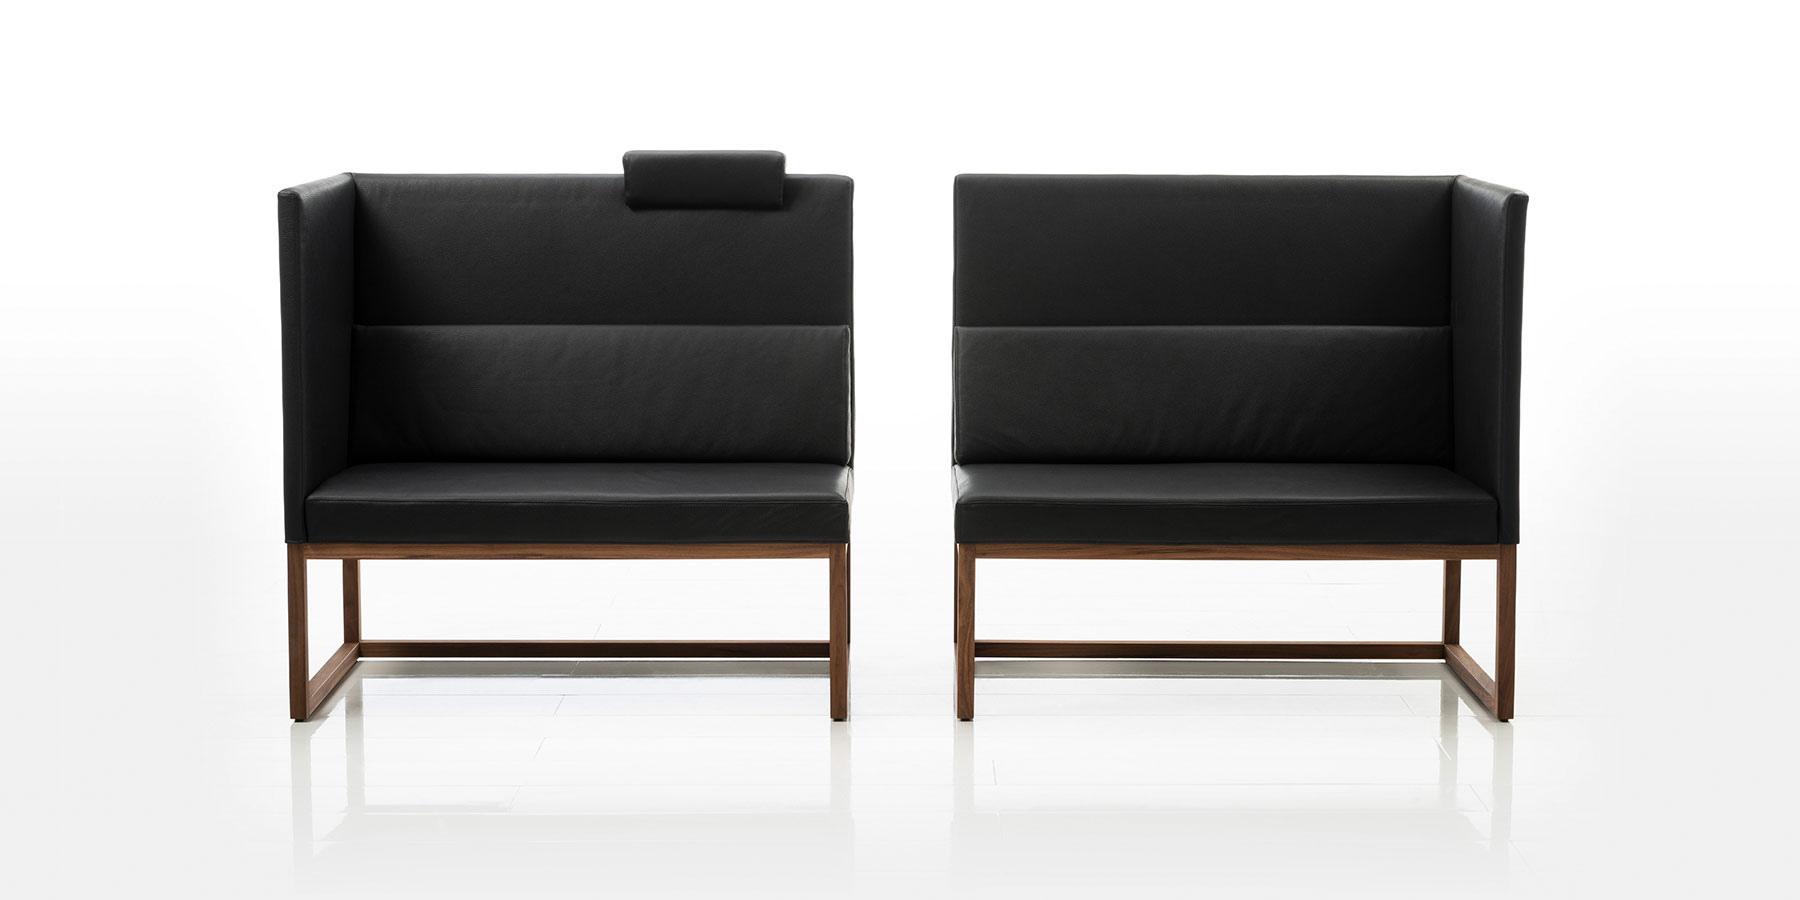 Zwei Sitzbänke in schwarzem Leder mit hoher Rücken- und Seitenlehne stehen mit geringem Abstand nebeneinander. Jede Sitzbank hat nur ein Seitenteil. Die einander gegenüberliegenden Seiten sind offen. Das Gestell ist aus dunklem Holz gefertigt.